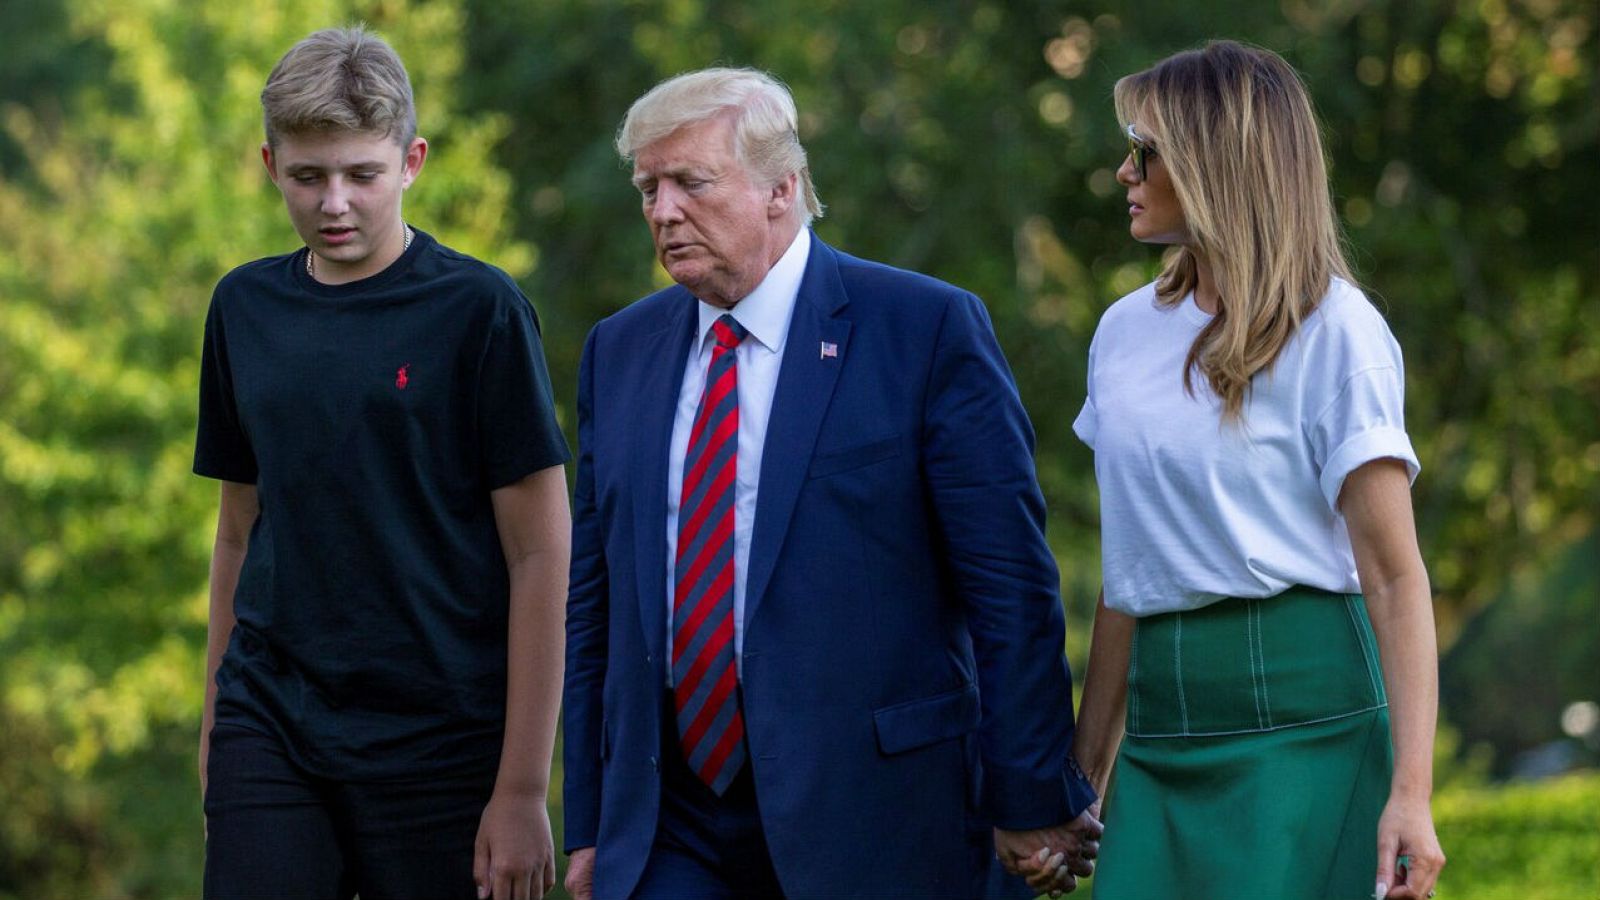 El presidente de Estados Unidos, Donald Trump, camina acompañado por la primera dama Melania Trump y su hijo Barron en los jardines de la Casa Blanca en Washington (EE.UU) en una imagen de archivo.